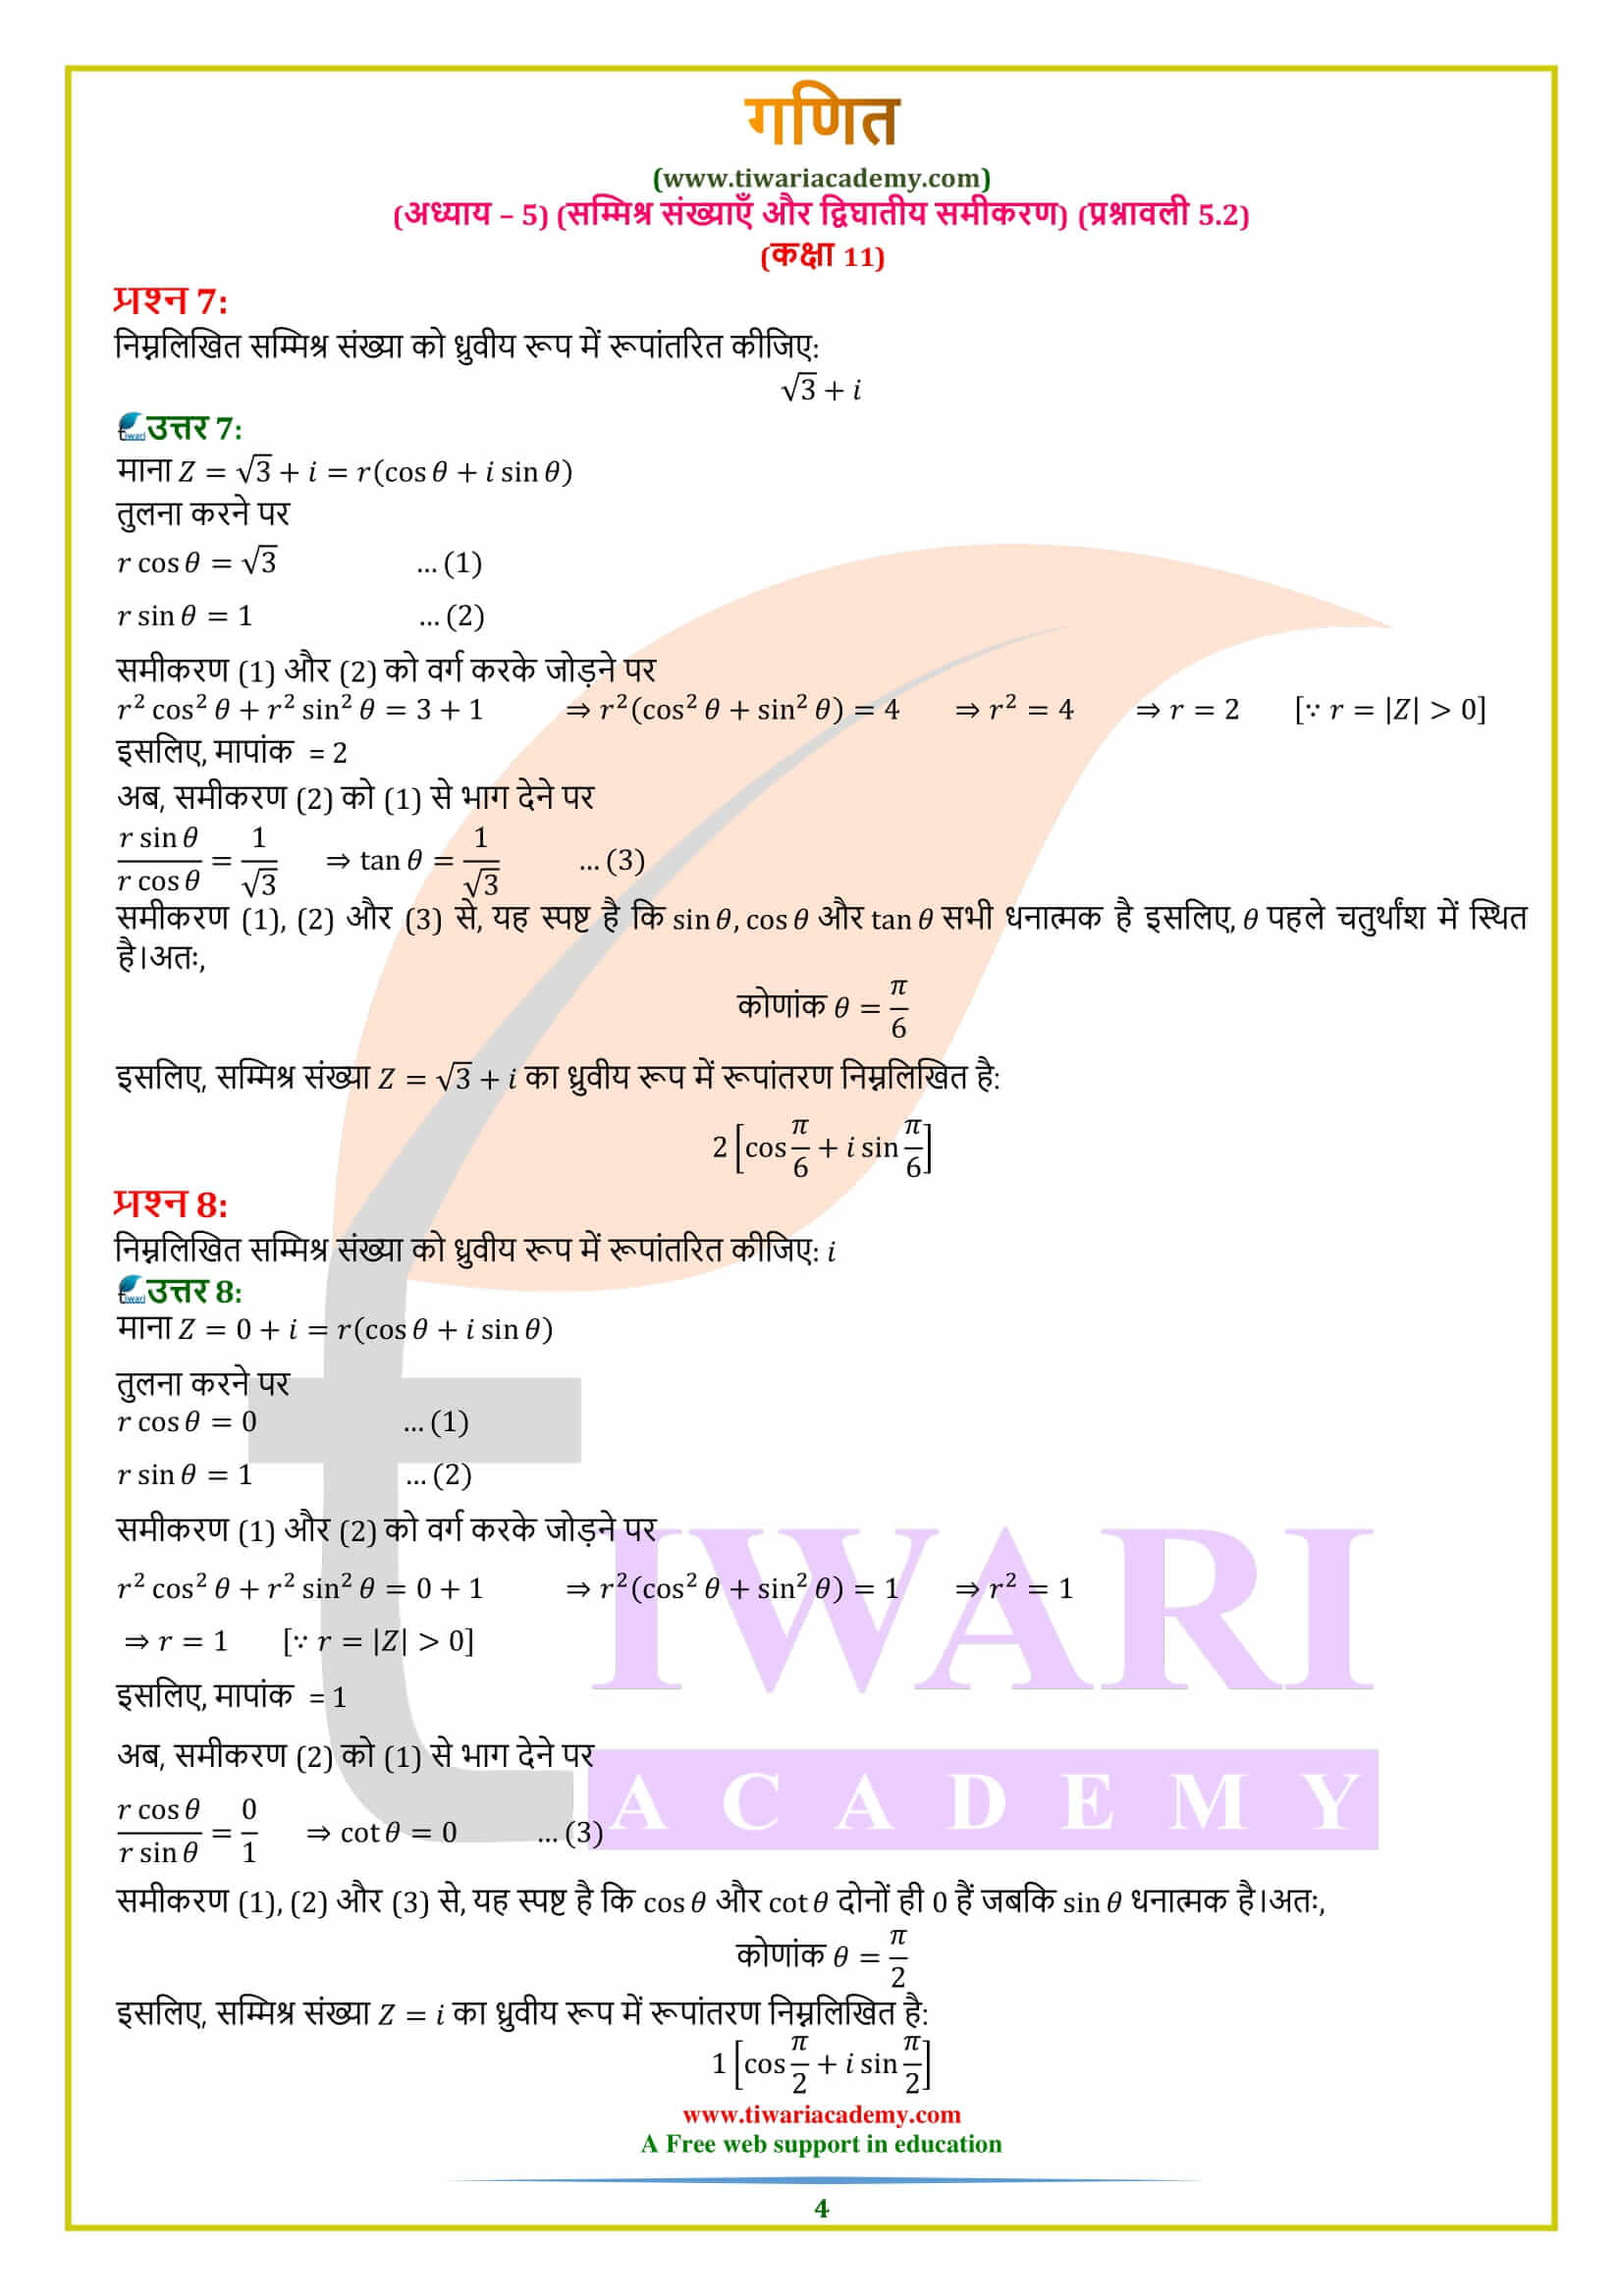 एनसीईआरटी समाधान कक्षा 11 गणित प्रश्नावली 5.2 हिंदी में